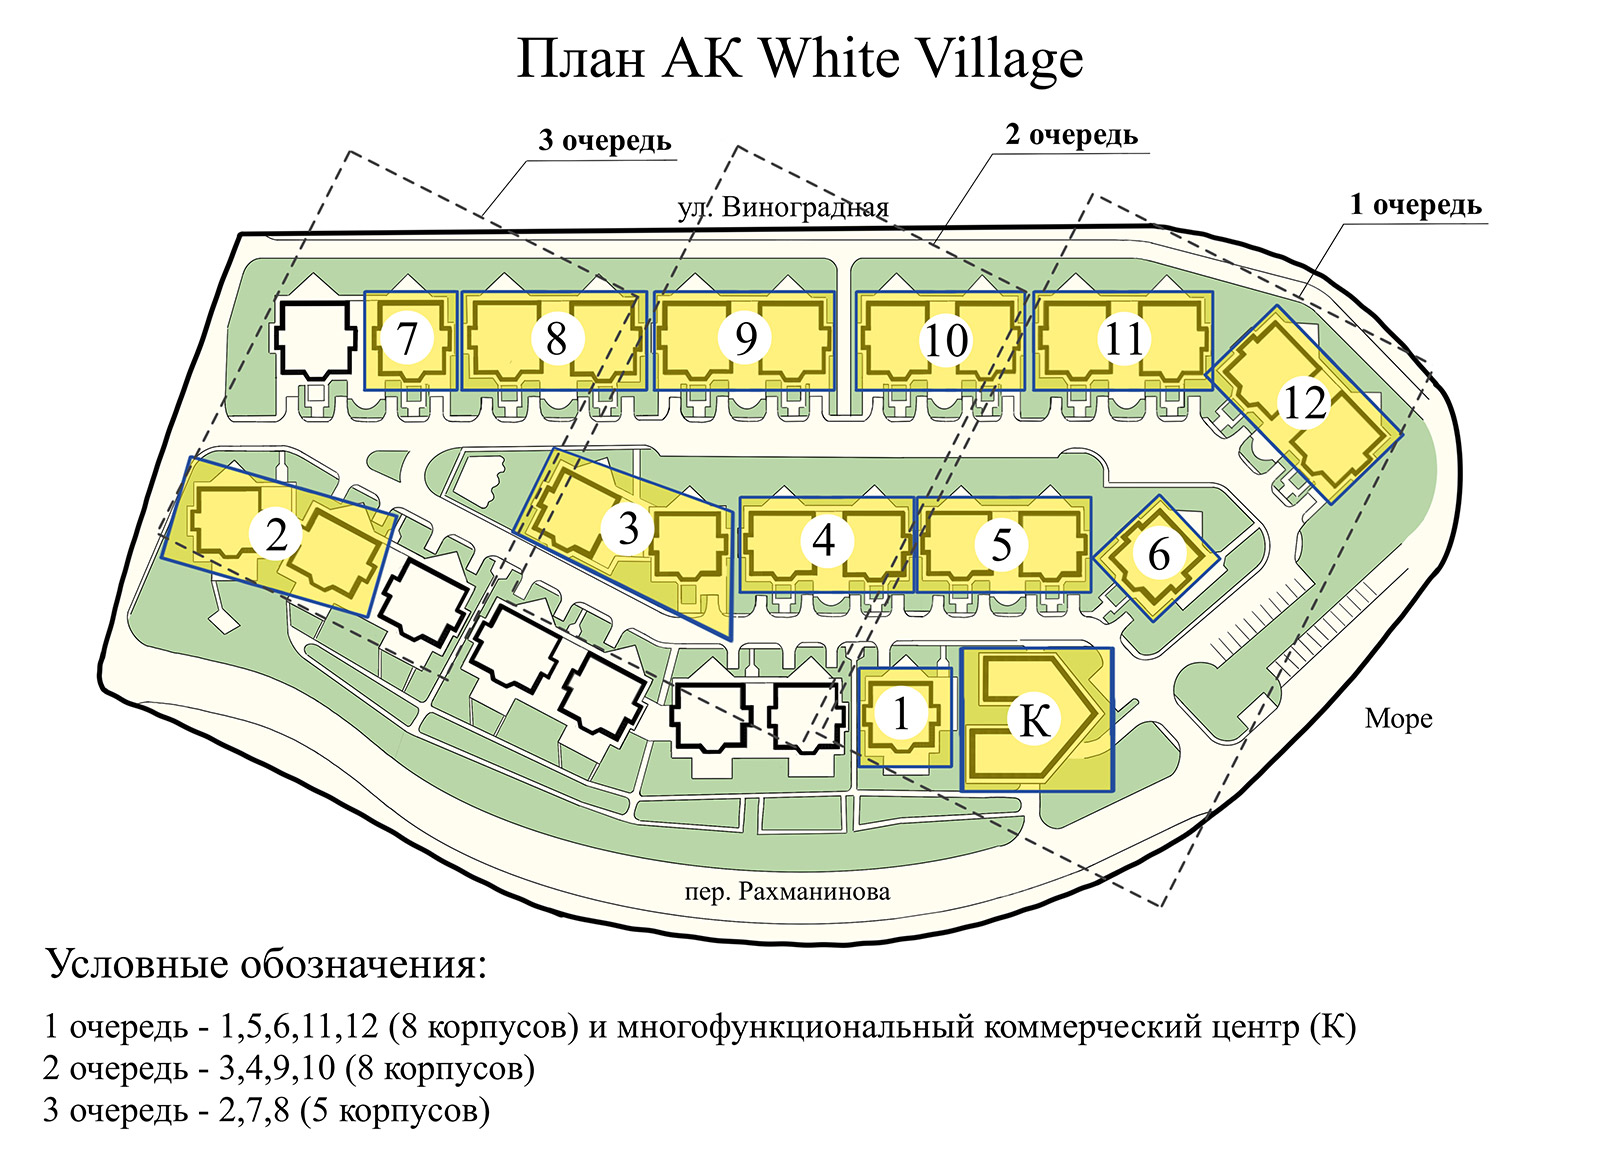 White village